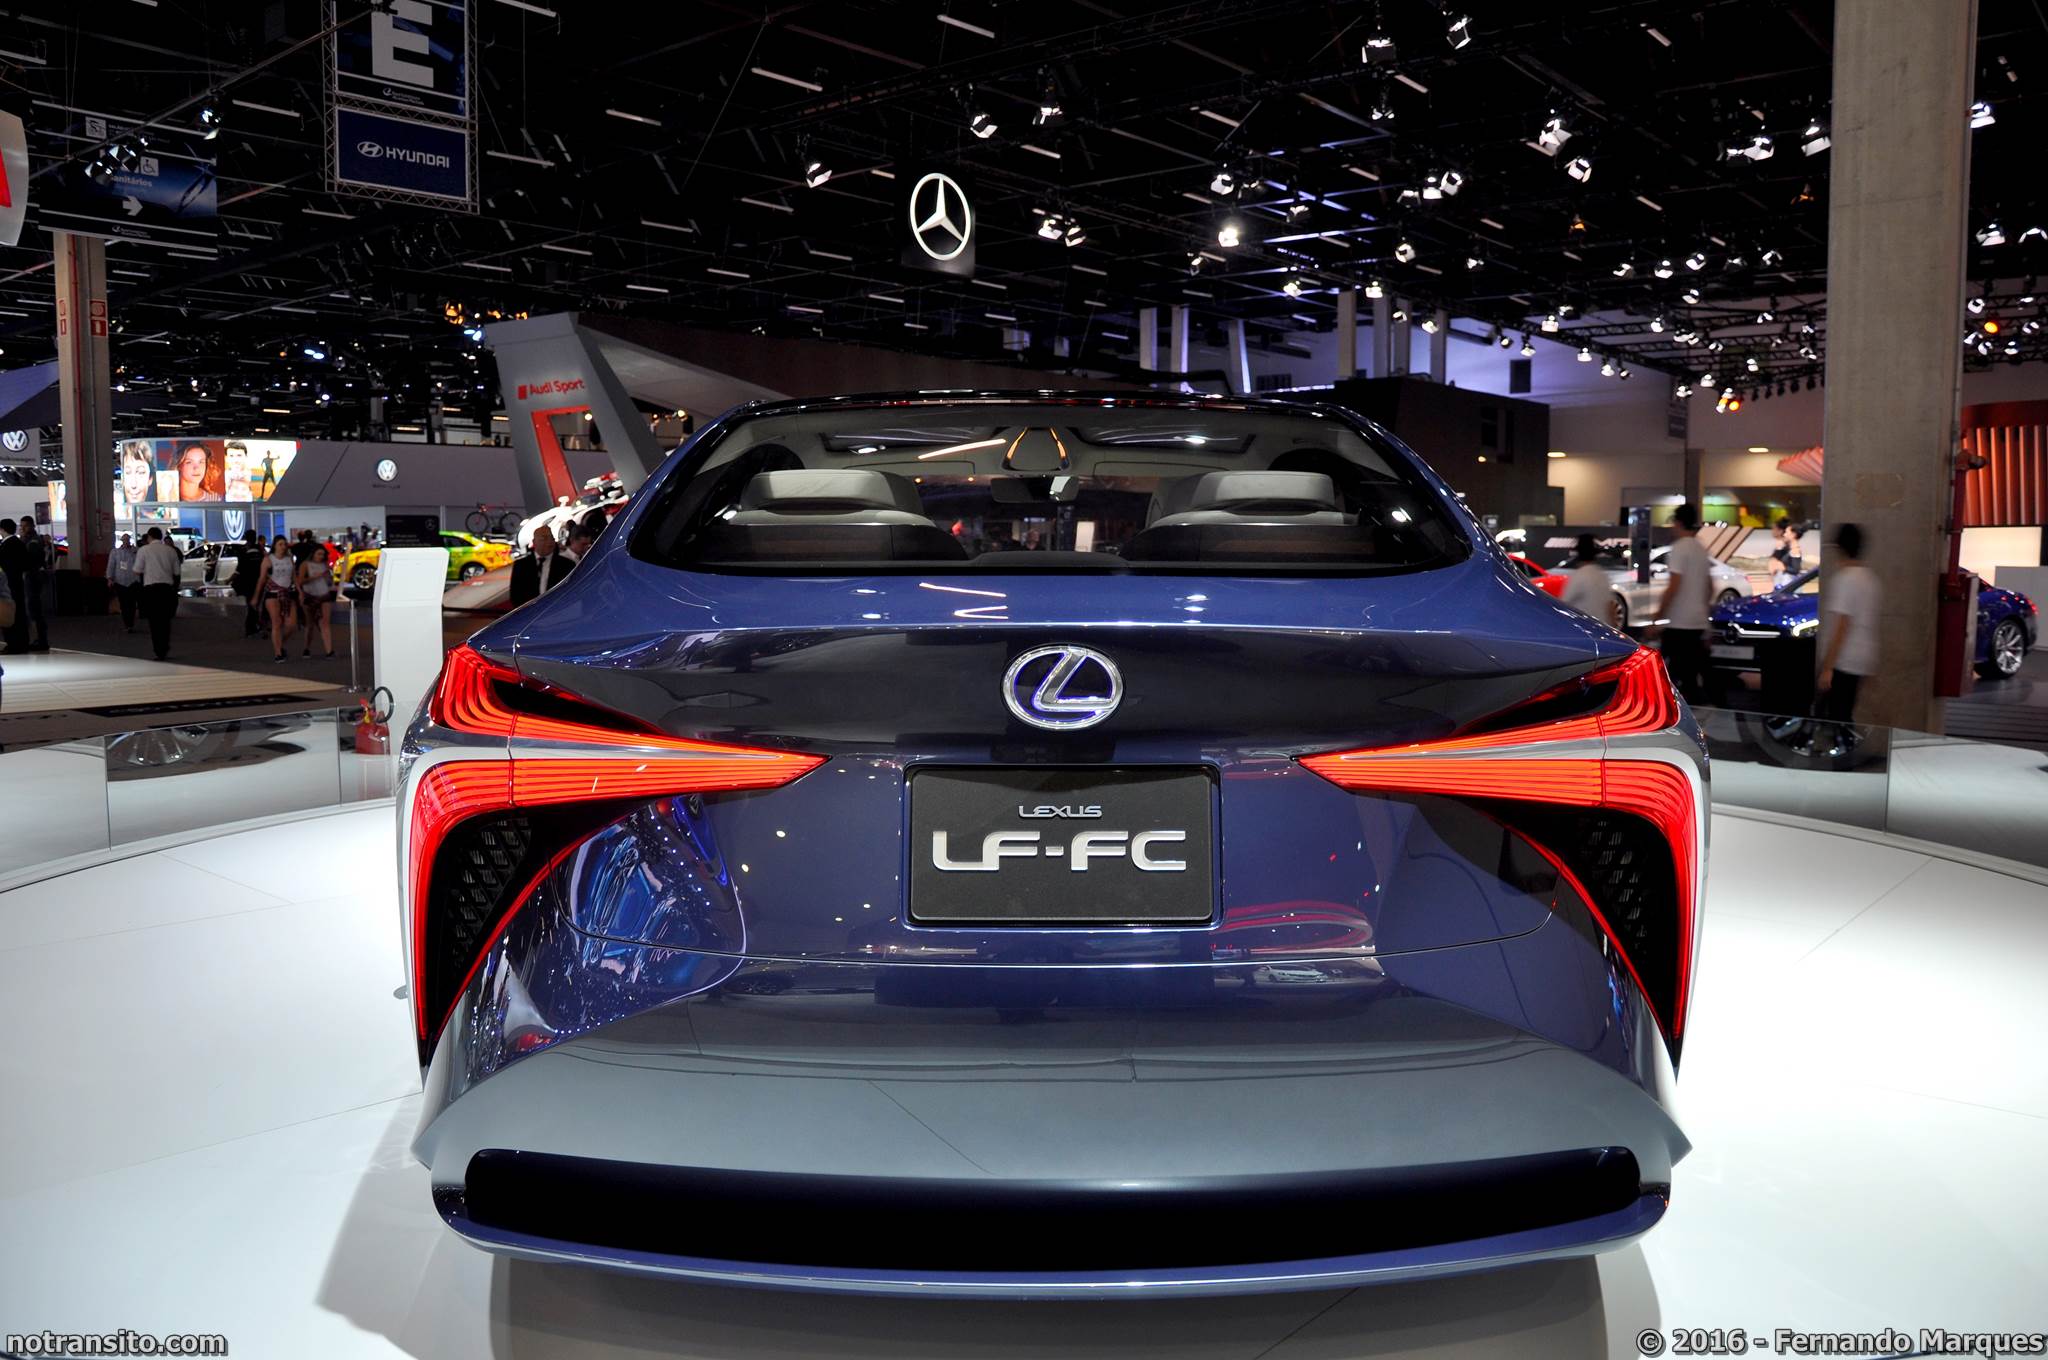 Lecus LC-FC Concept Salão do Automóvel 2016